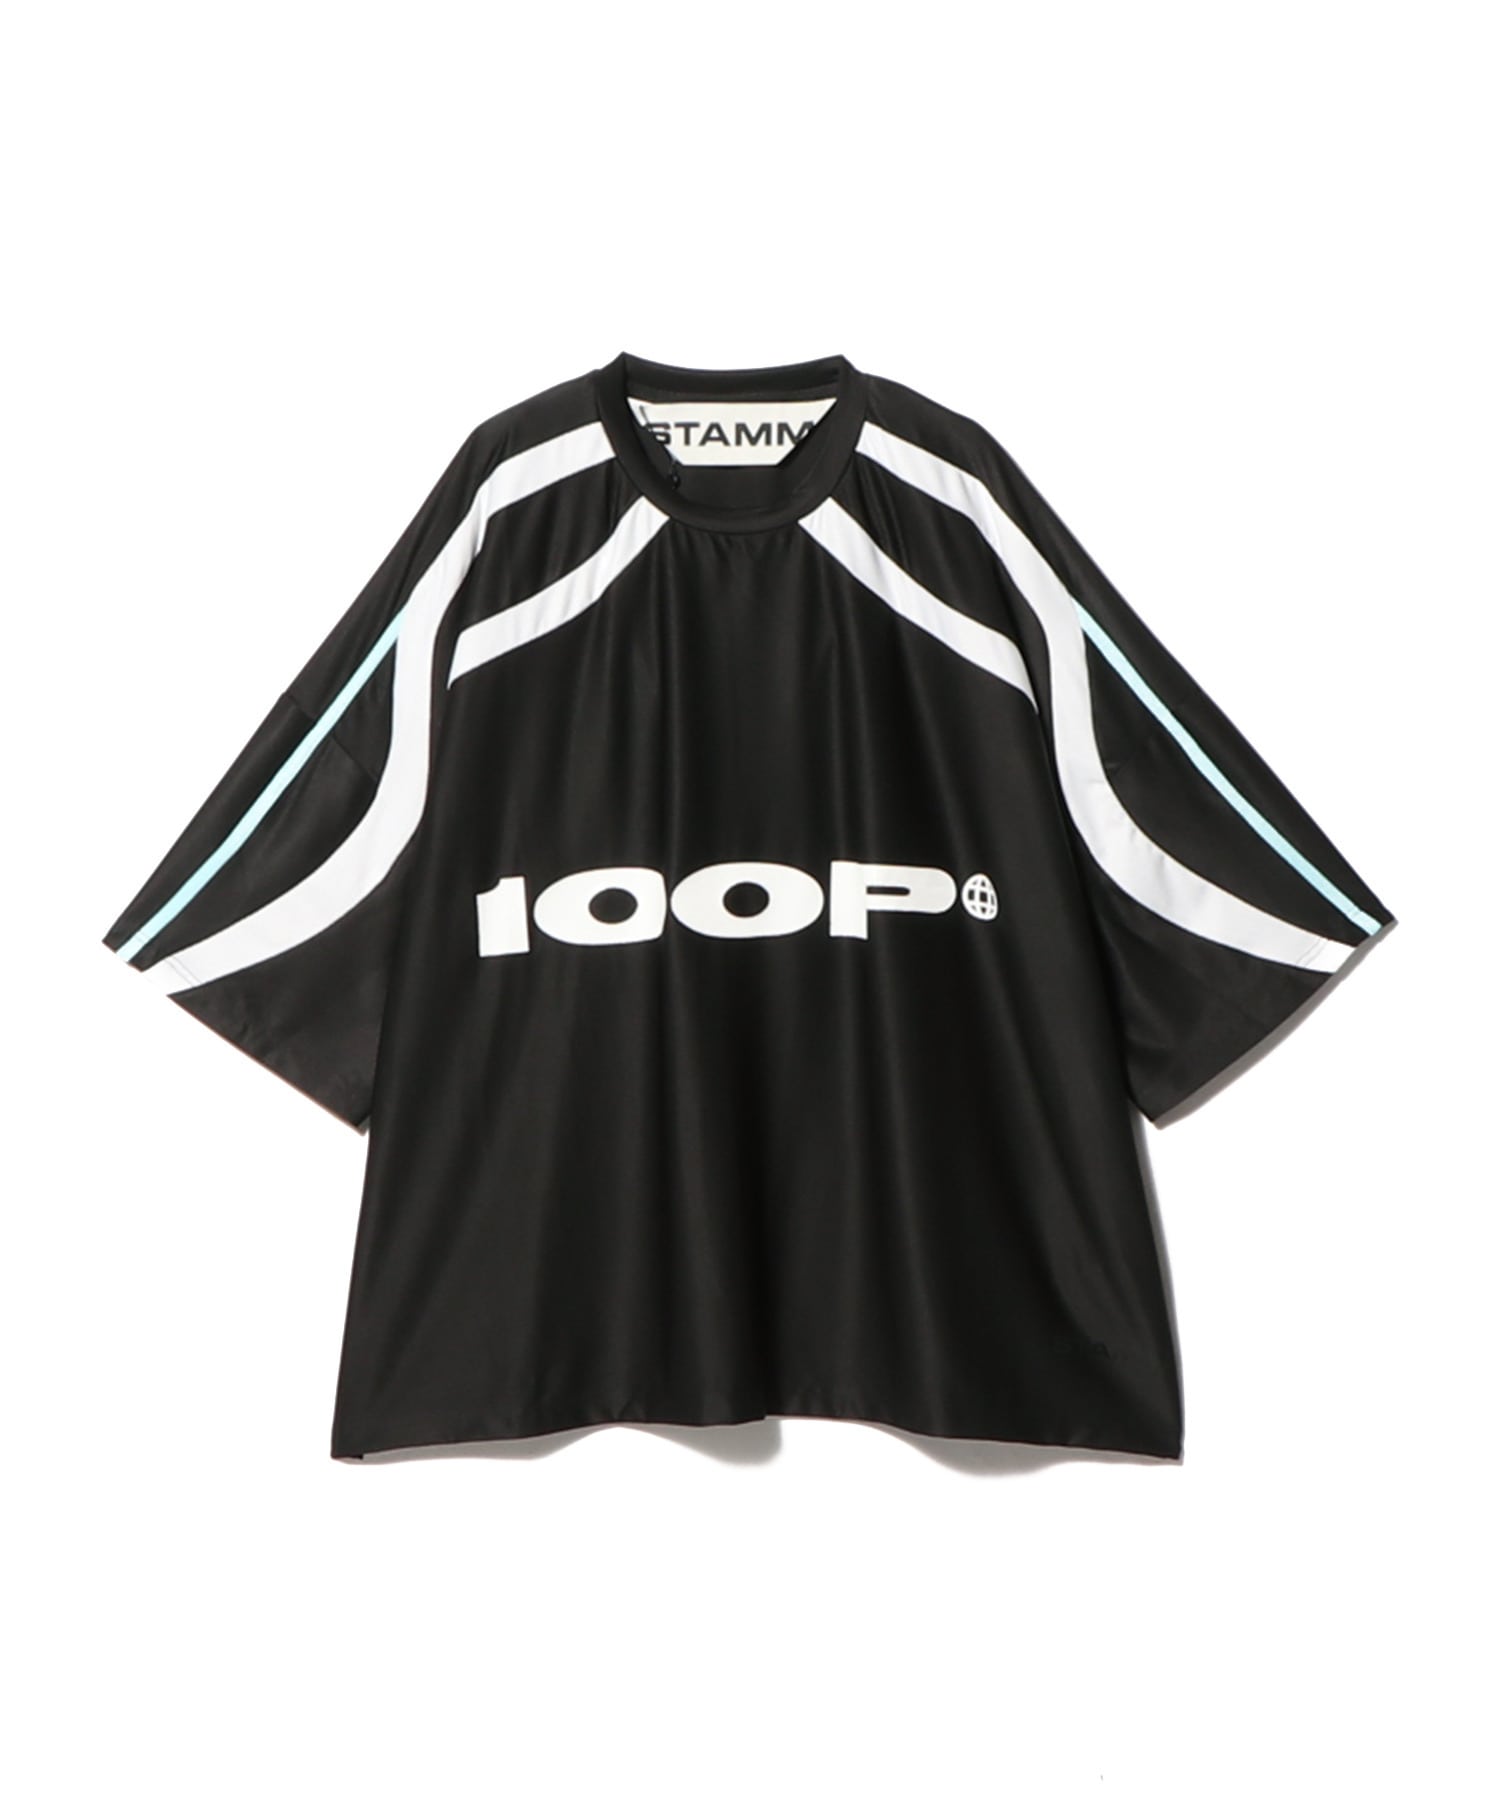 STAMM / 100P Tシャツ